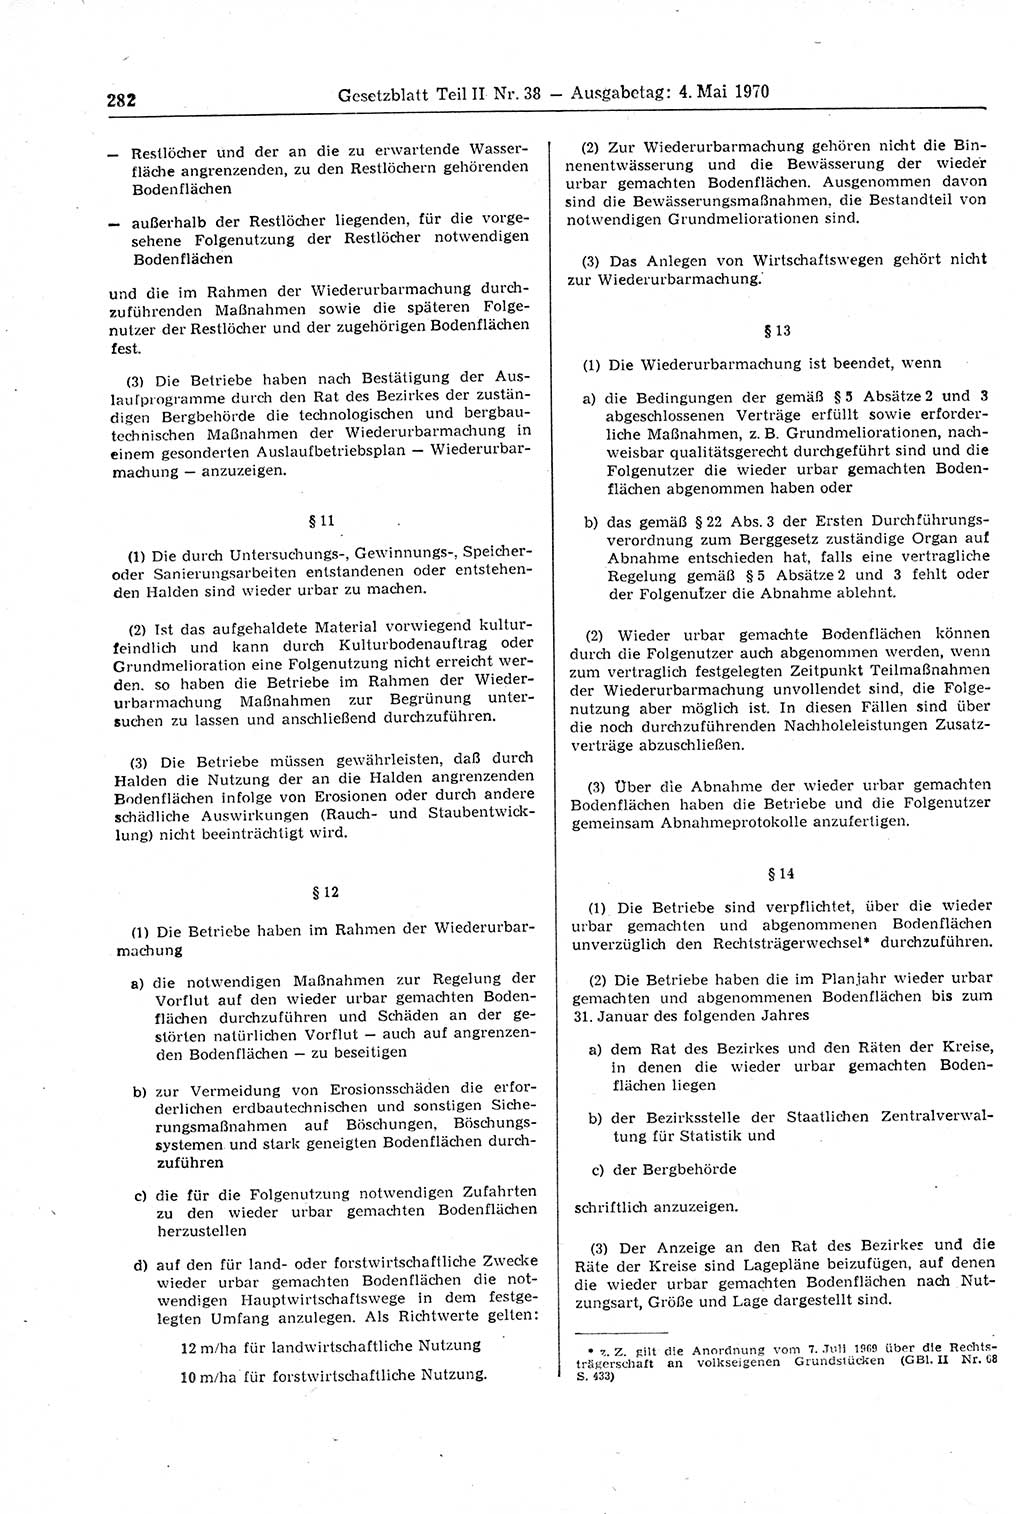 Gesetzblatt (GBl.) der Deutschen Demokratischen Republik (DDR) Teil ⅠⅠ 1970, Seite 282 (GBl. DDR ⅠⅠ 1970, S. 282)